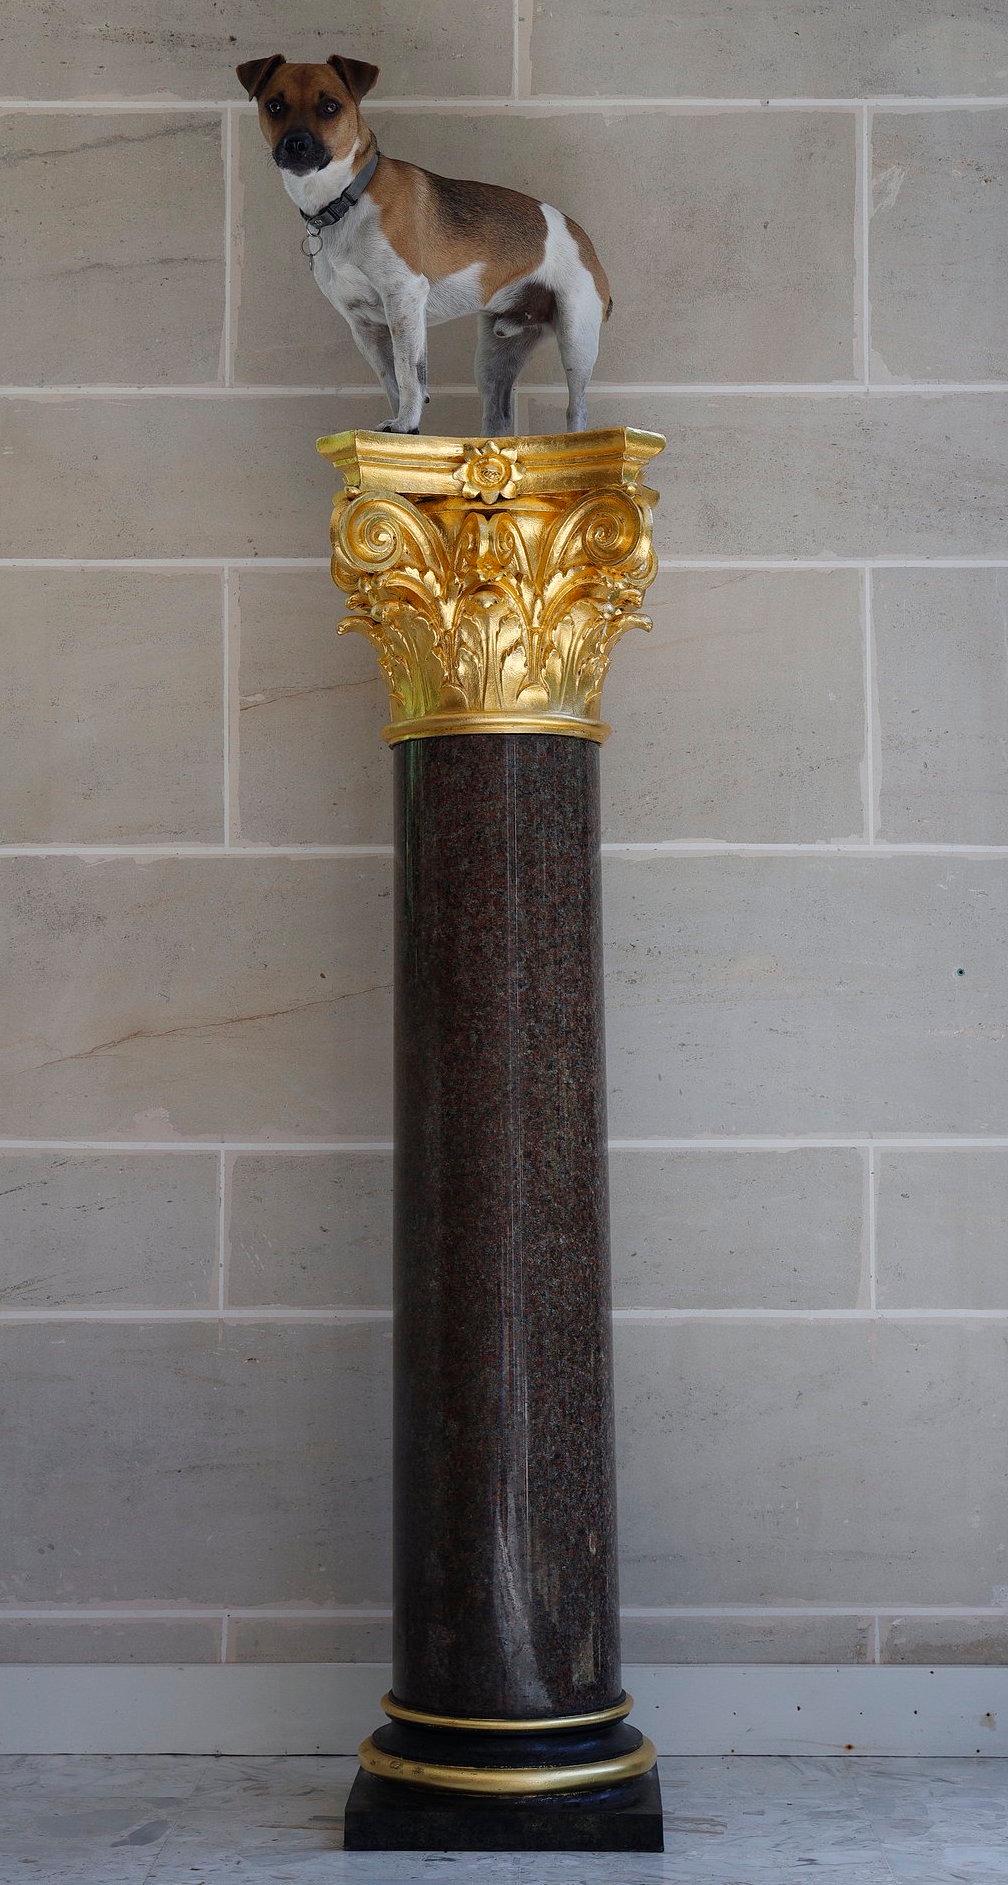 Grande colonne en granit rouge et bronze patiné de style néoclassique, avec chapiteau corinthien. Elle est posée sur une base circulaire en terrasse au-dessus d'un socle carré. Travail français du 20e siècle.

